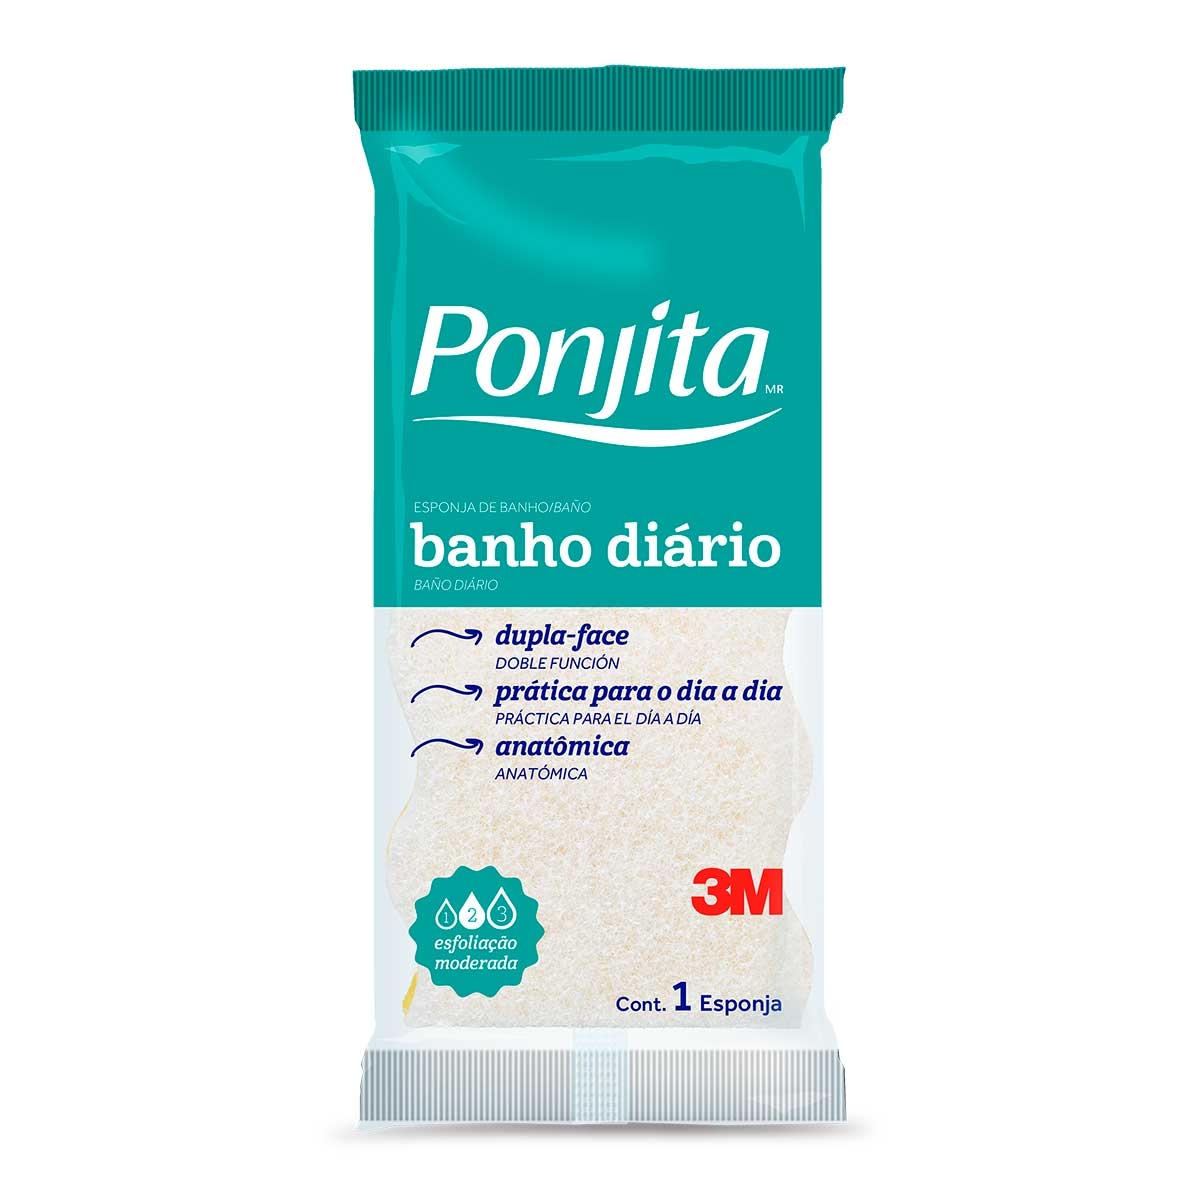 Esponja de Banho Dupla Face Ponjita 3M com 1 unidade